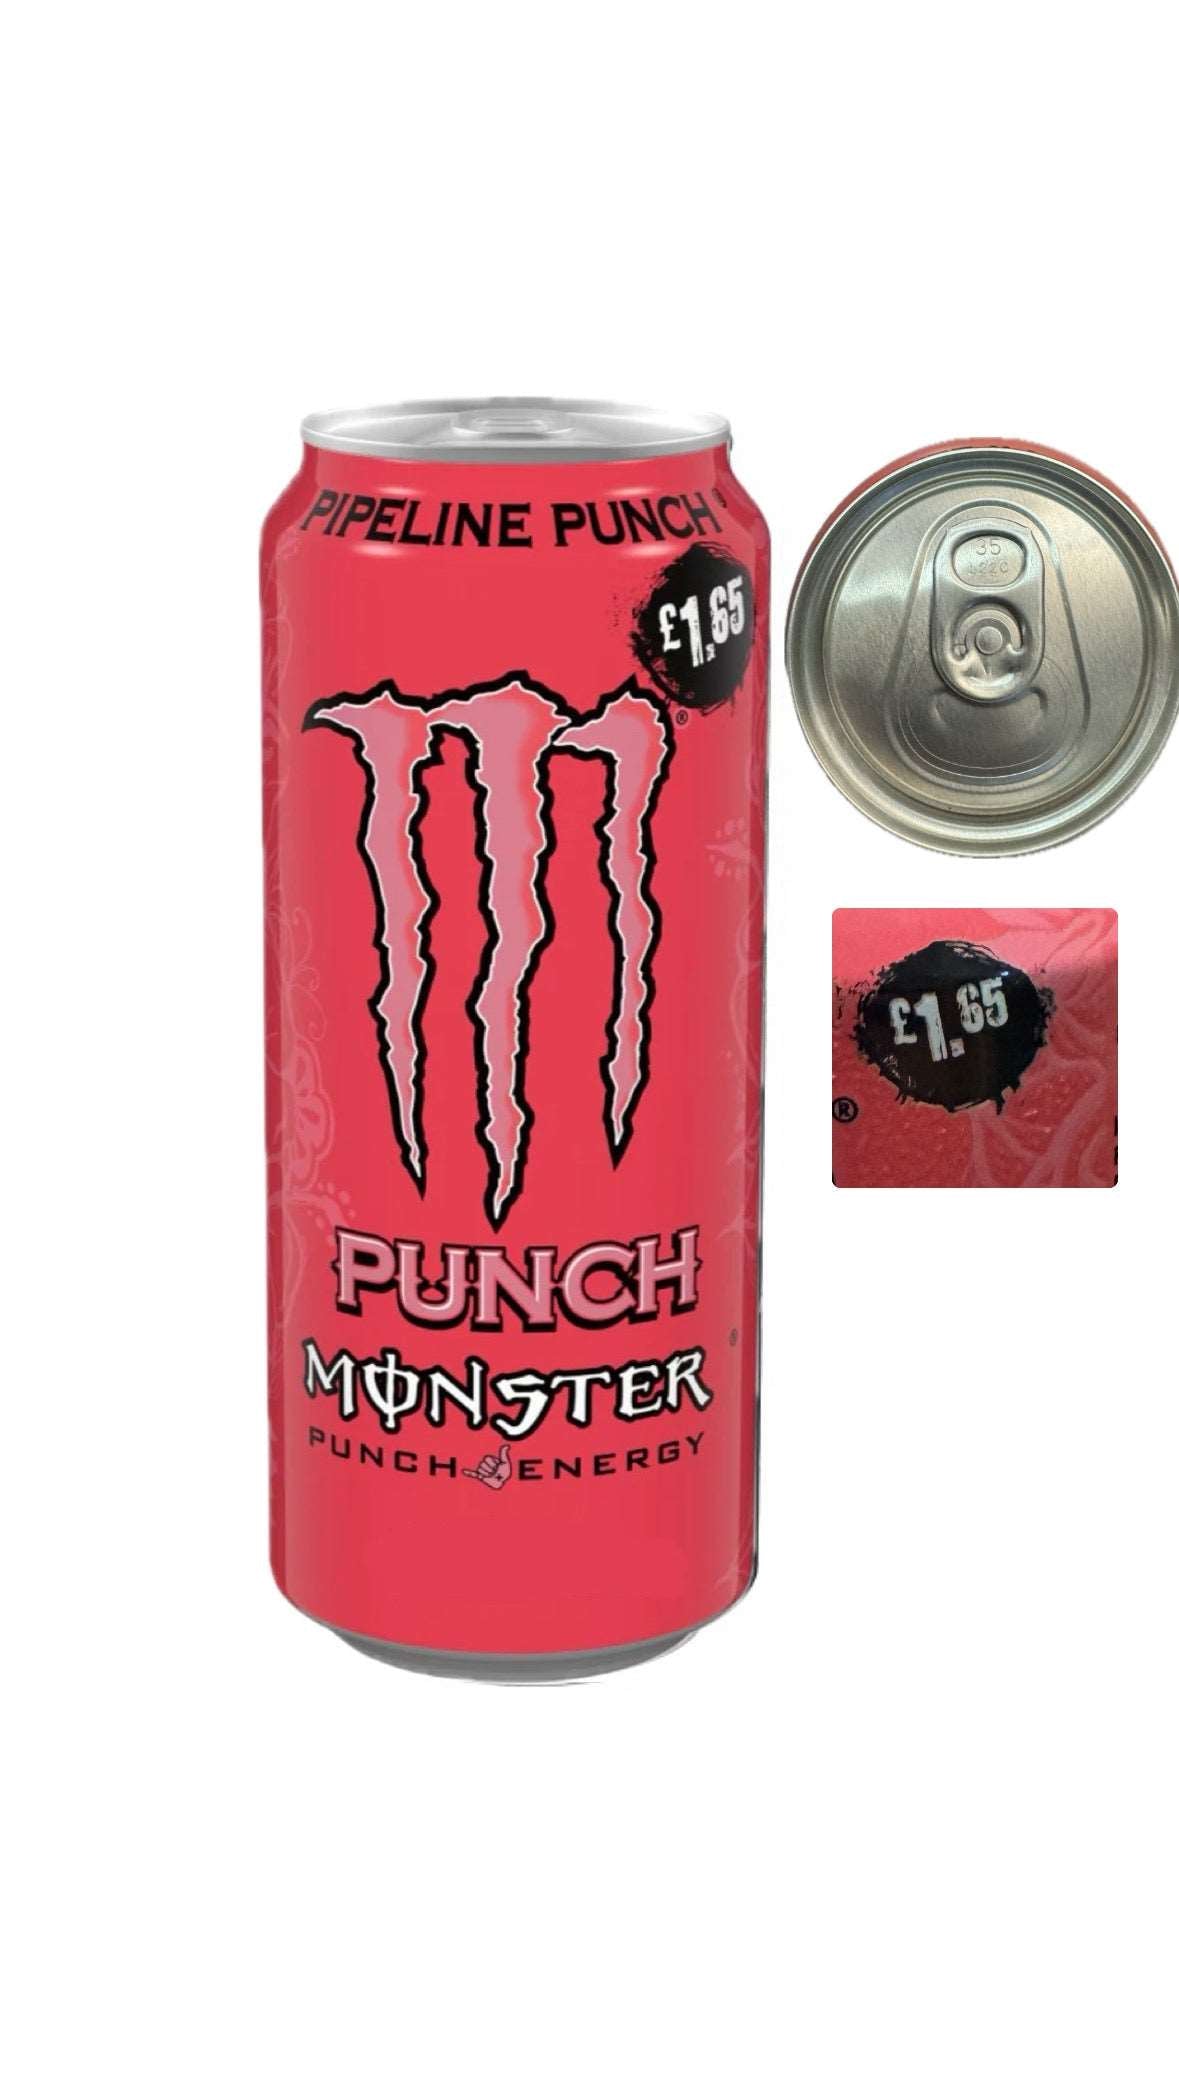 Monster Energy Punch Pipeline UK price market £ 1.65 sku: 1122 rare